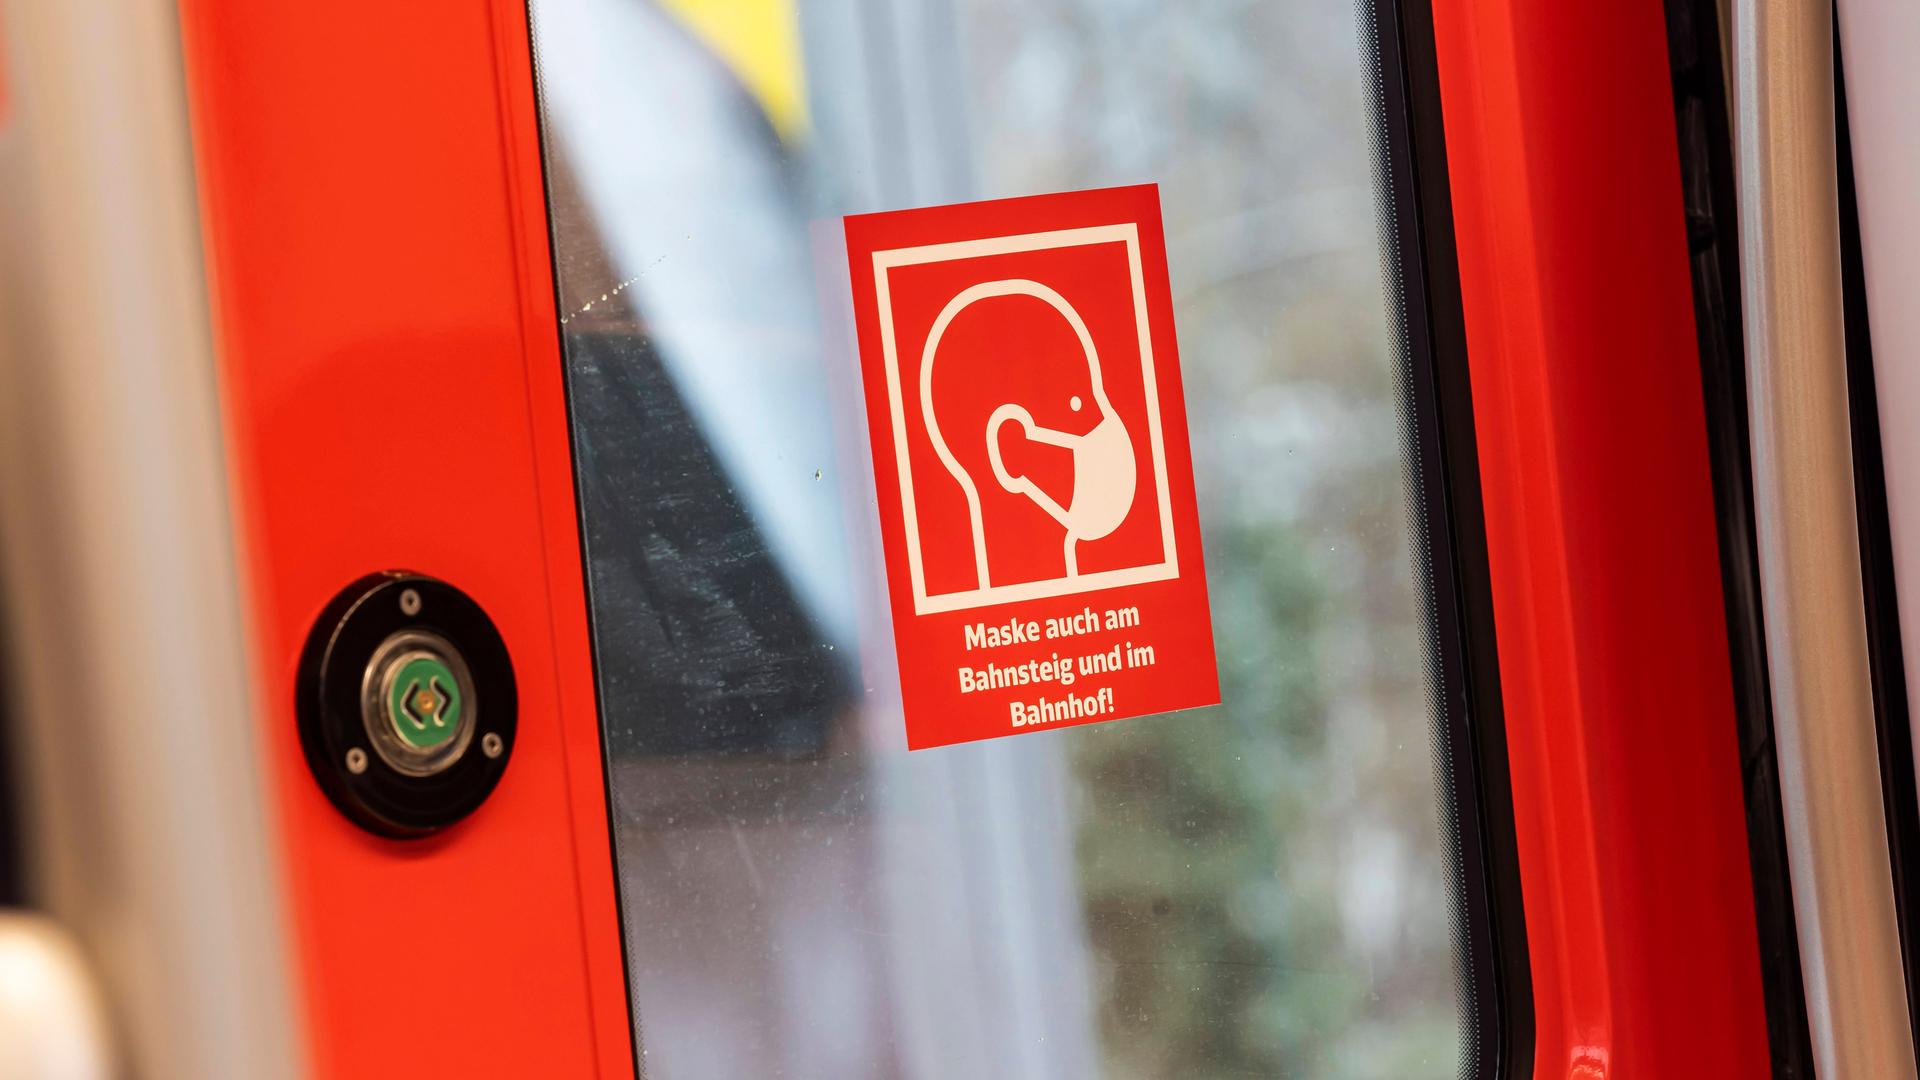 An der Tür einer Bahn klebt ein roter Aufkleber, auf dem eine Person mit Maske zu sehen ist. Darunter steht: "Maske auch am Bahnsteig und im Bahnhof!"